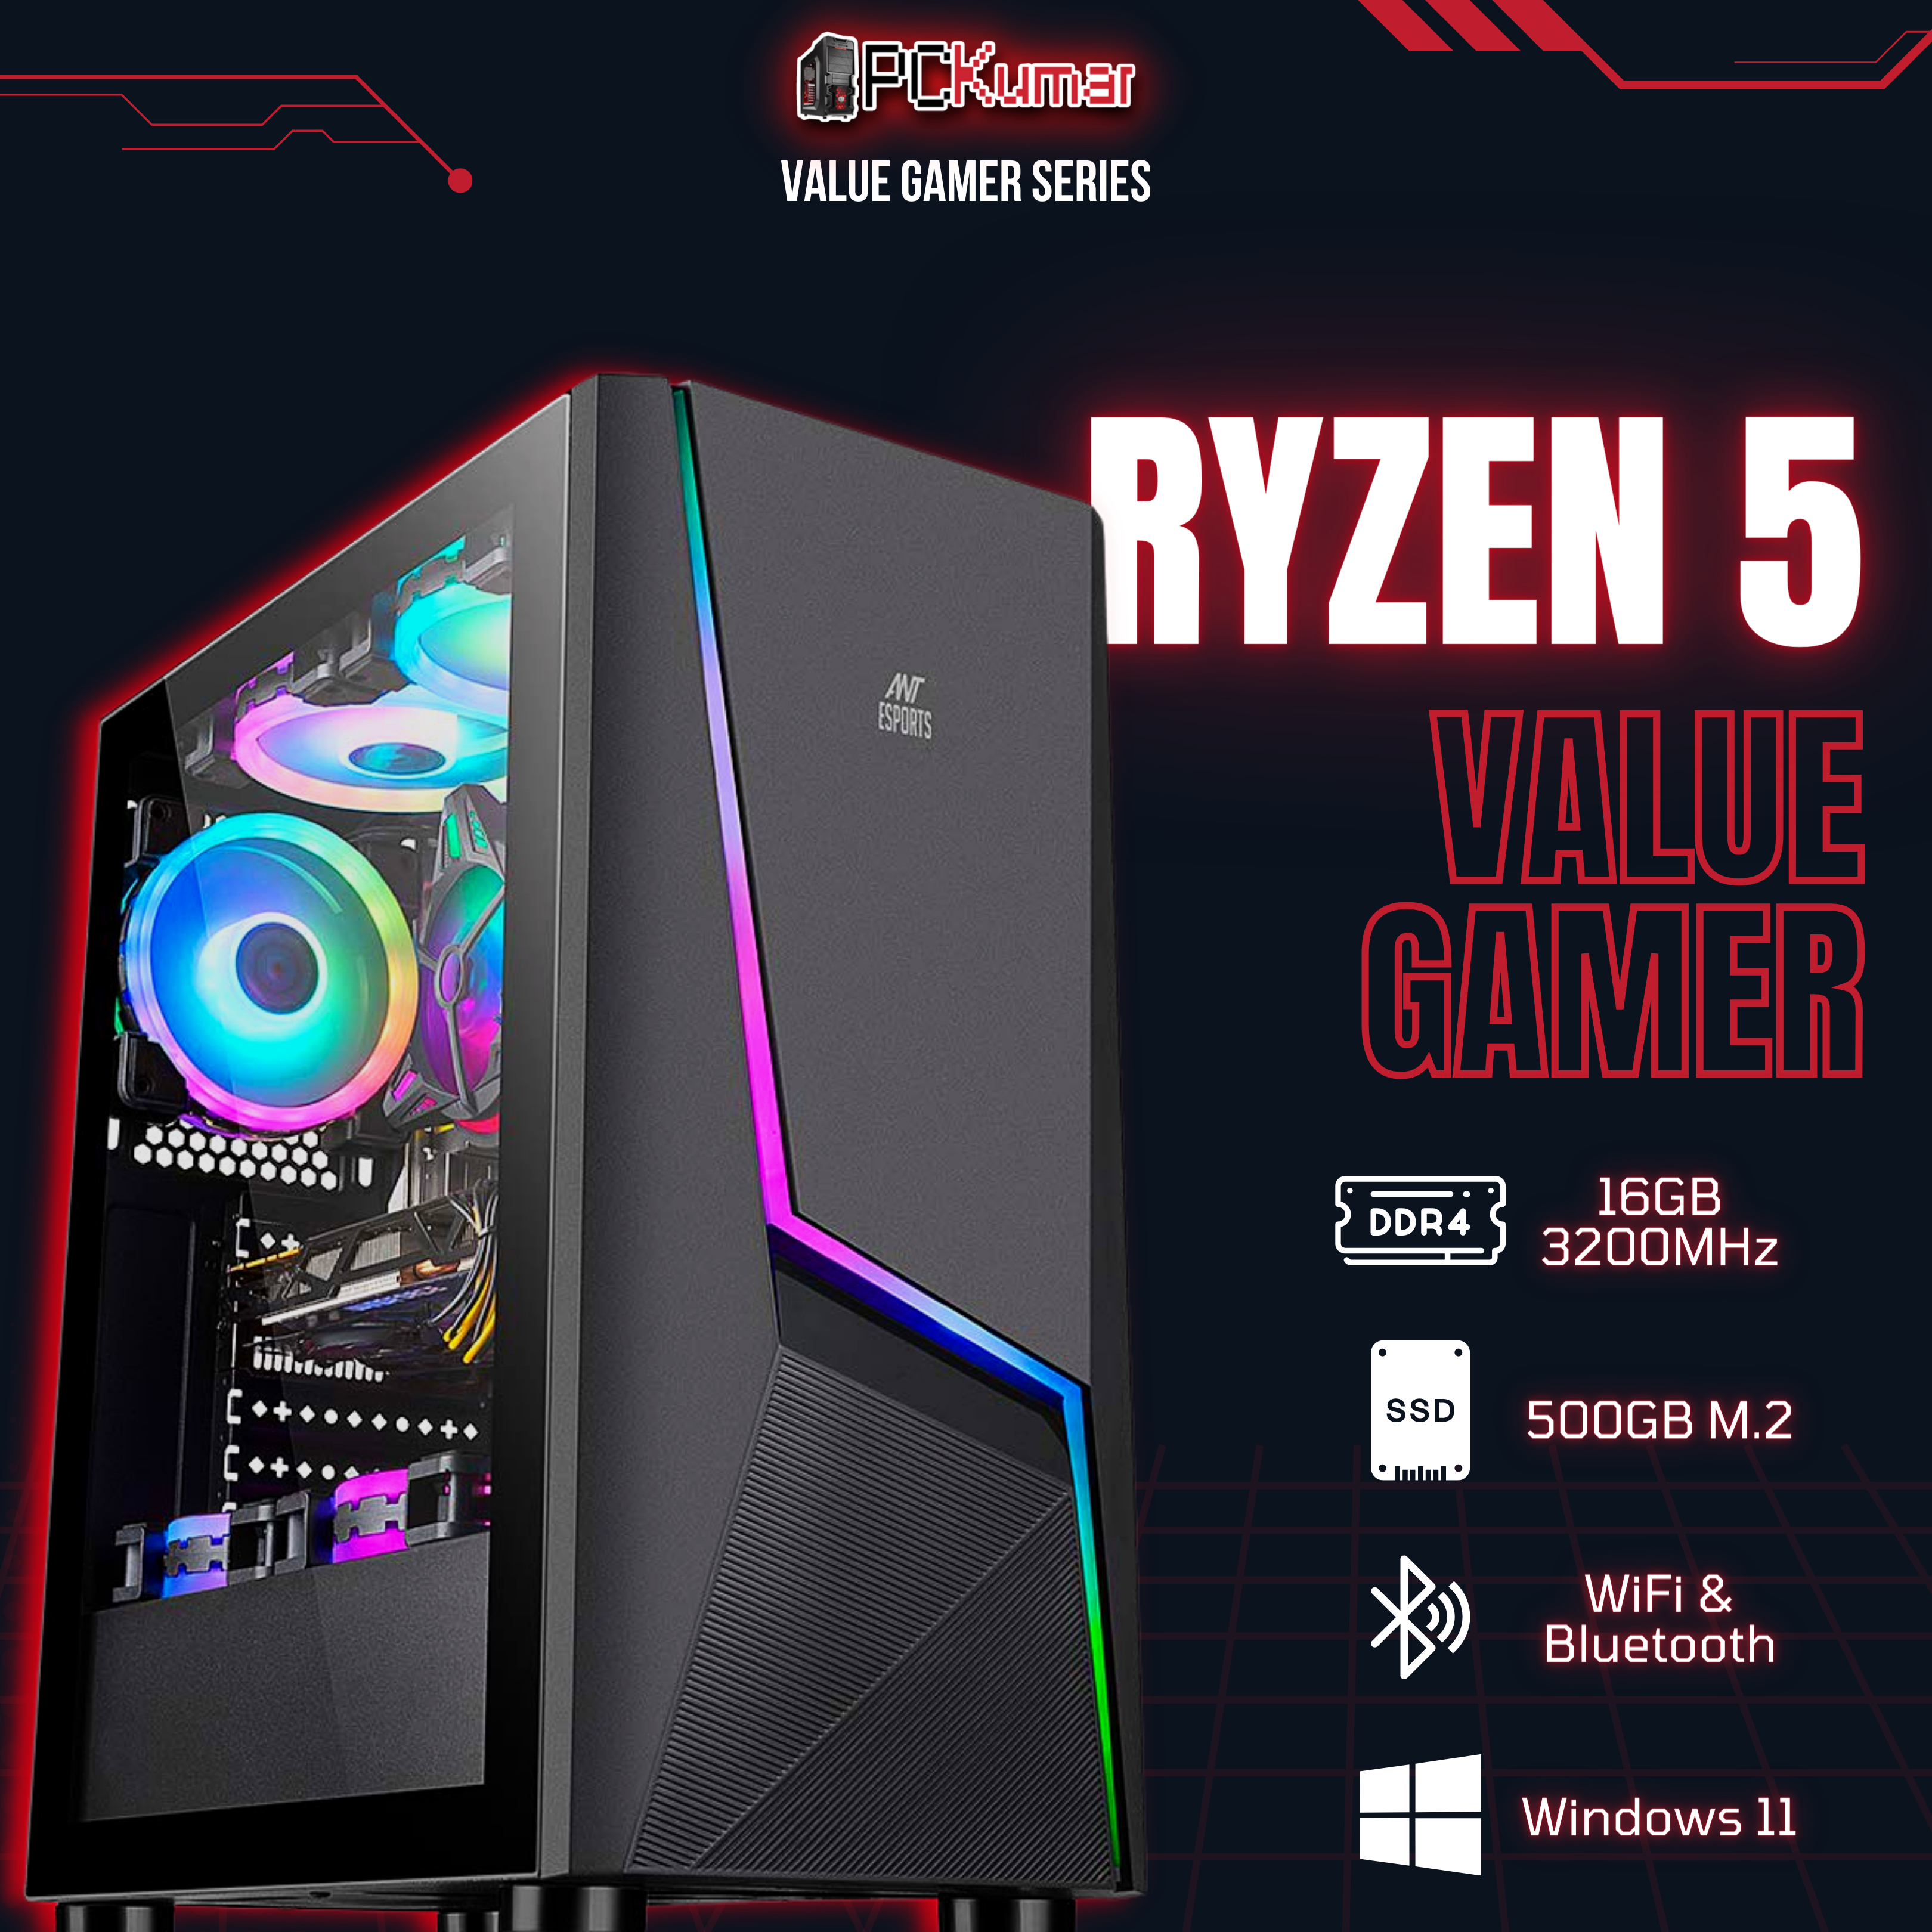 Value Gamer Ryzen 5